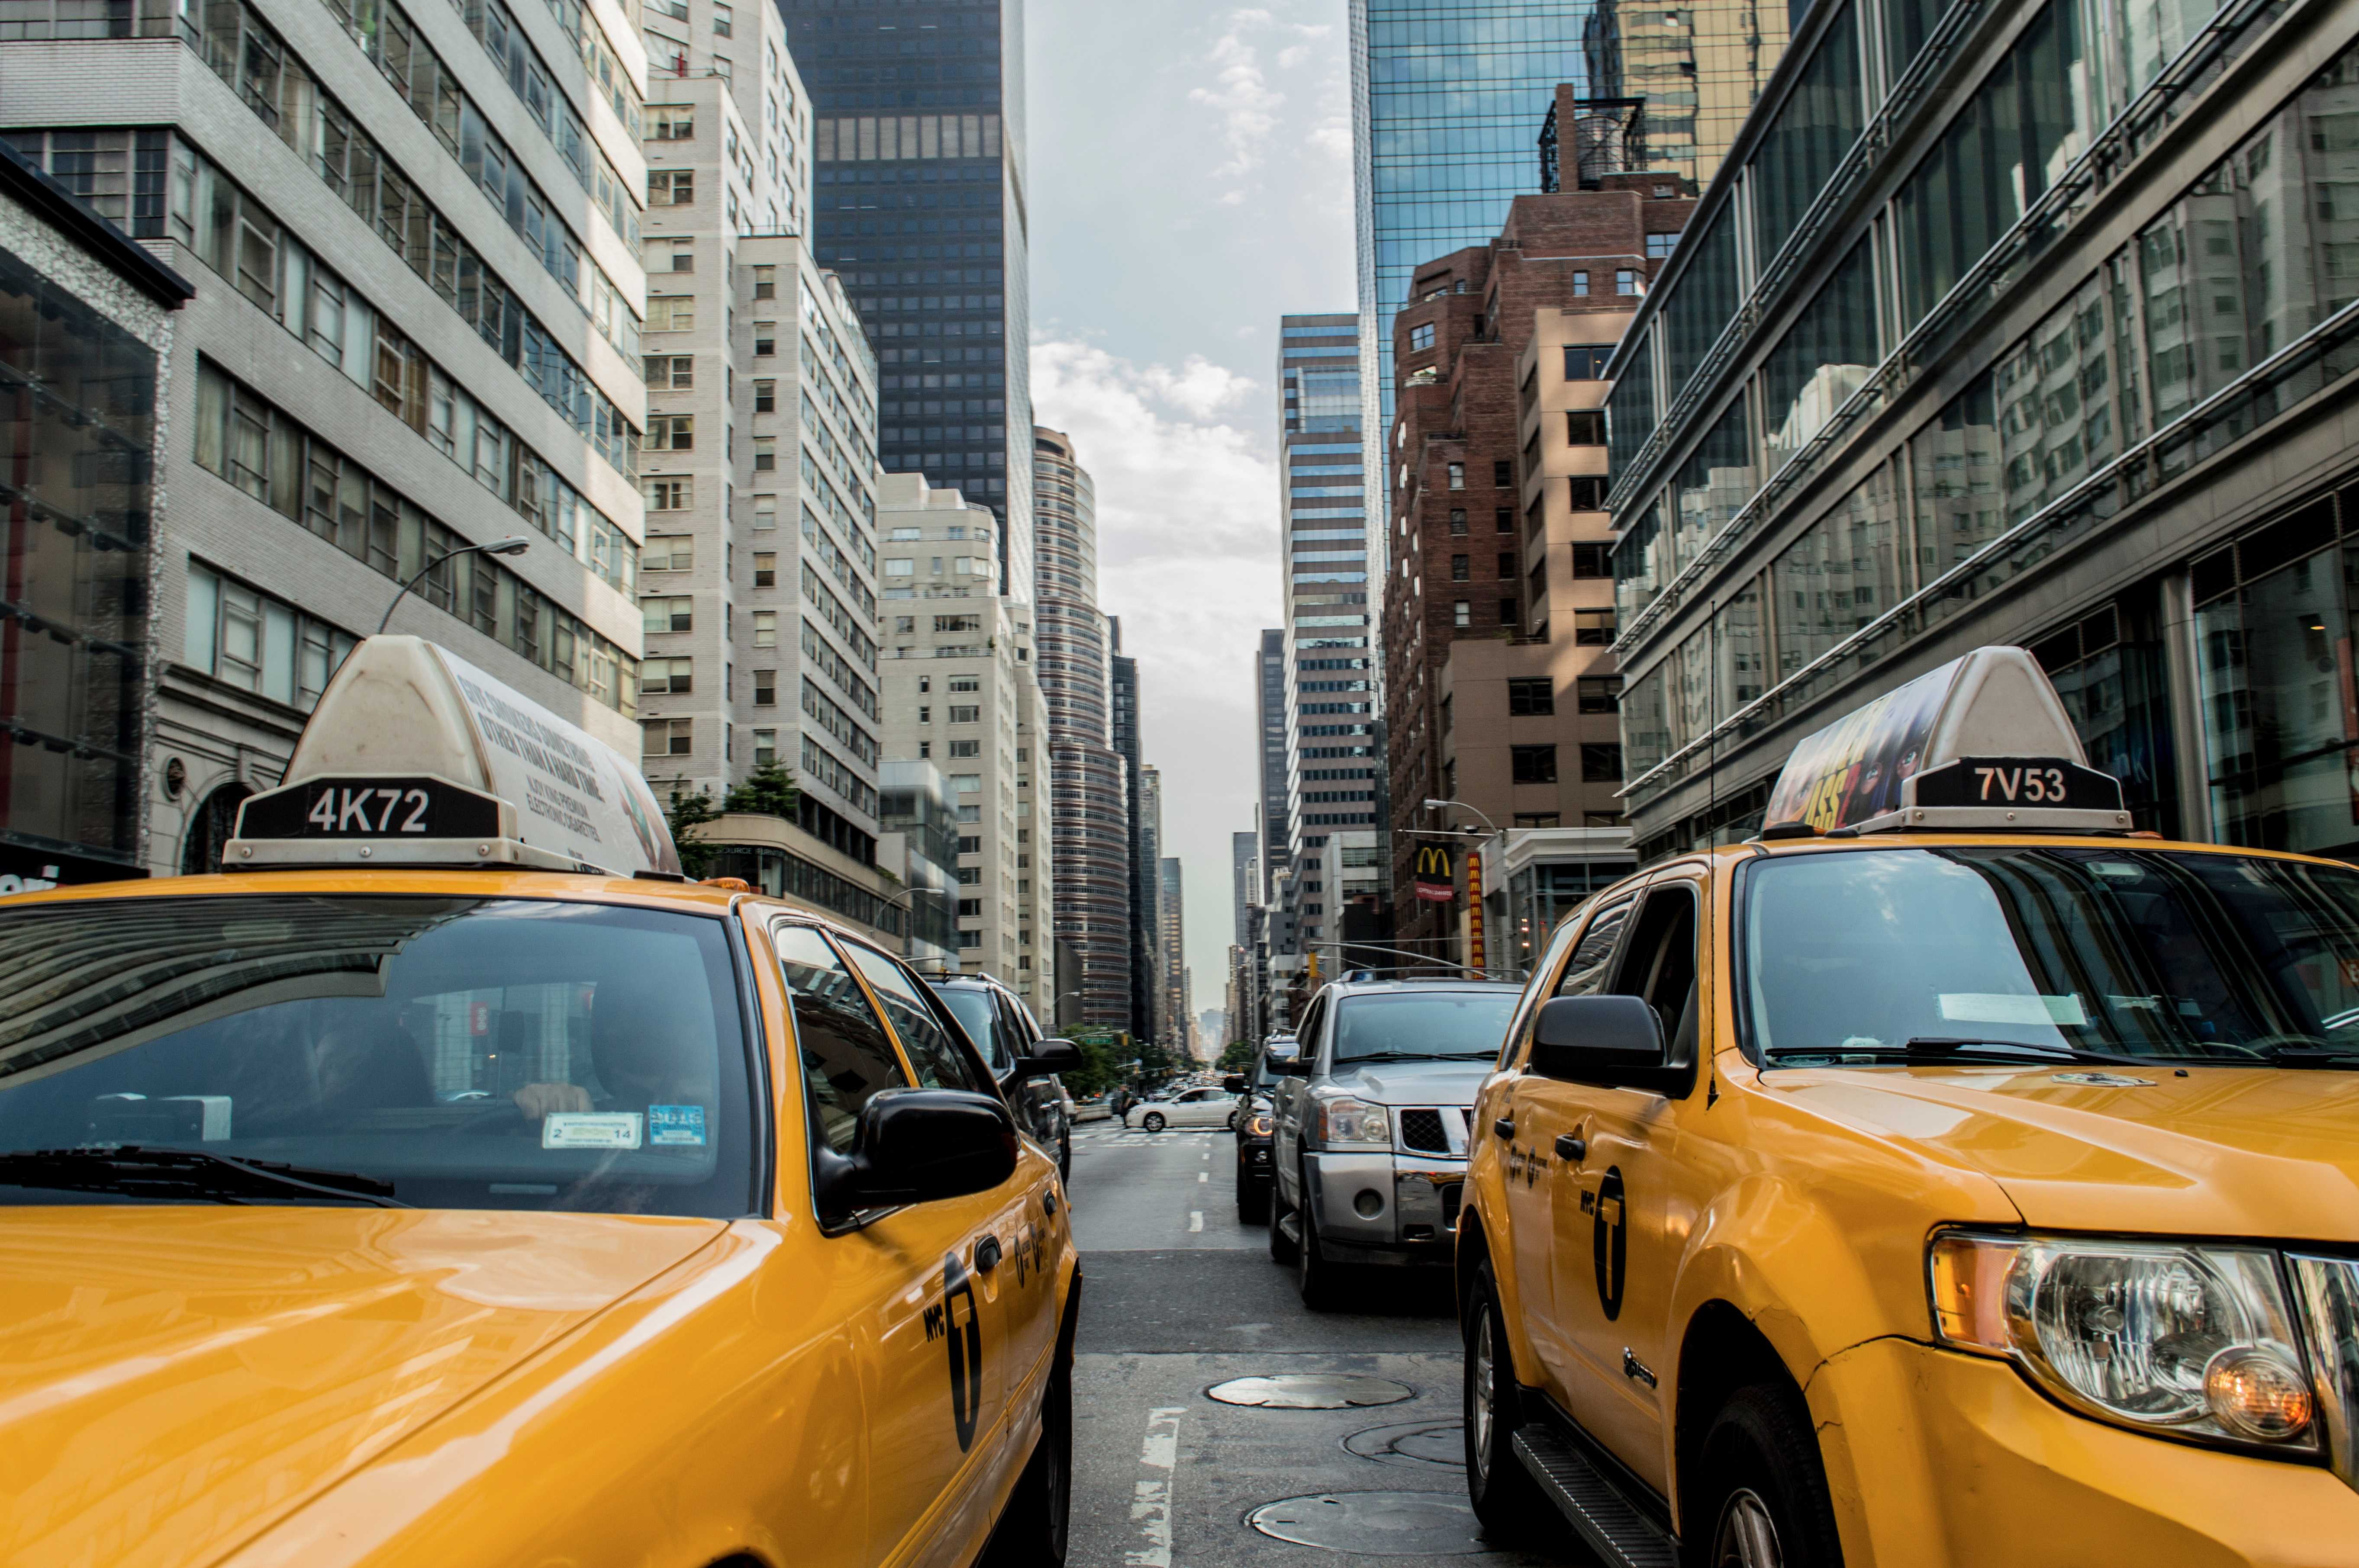 flac-a-cab-in-NYC-zamawianie-taksówki-nauka-angielskiego-gettinenglish